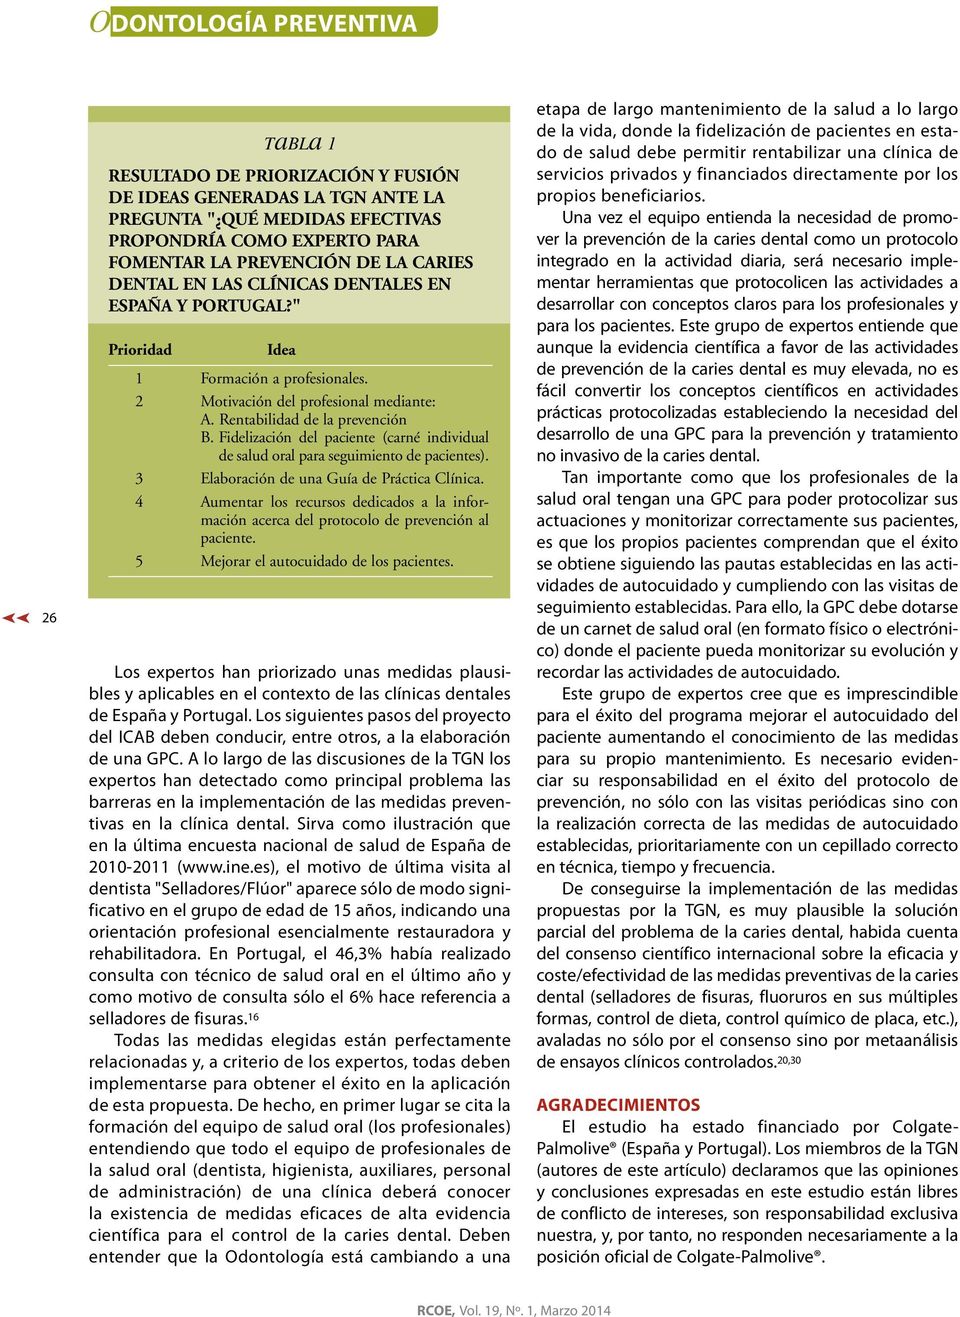 Fidelización del paciente (carné individual de salud oral para seguimiento de pacientes). 3 Elaboración de una Guía de Práctica Clínica.